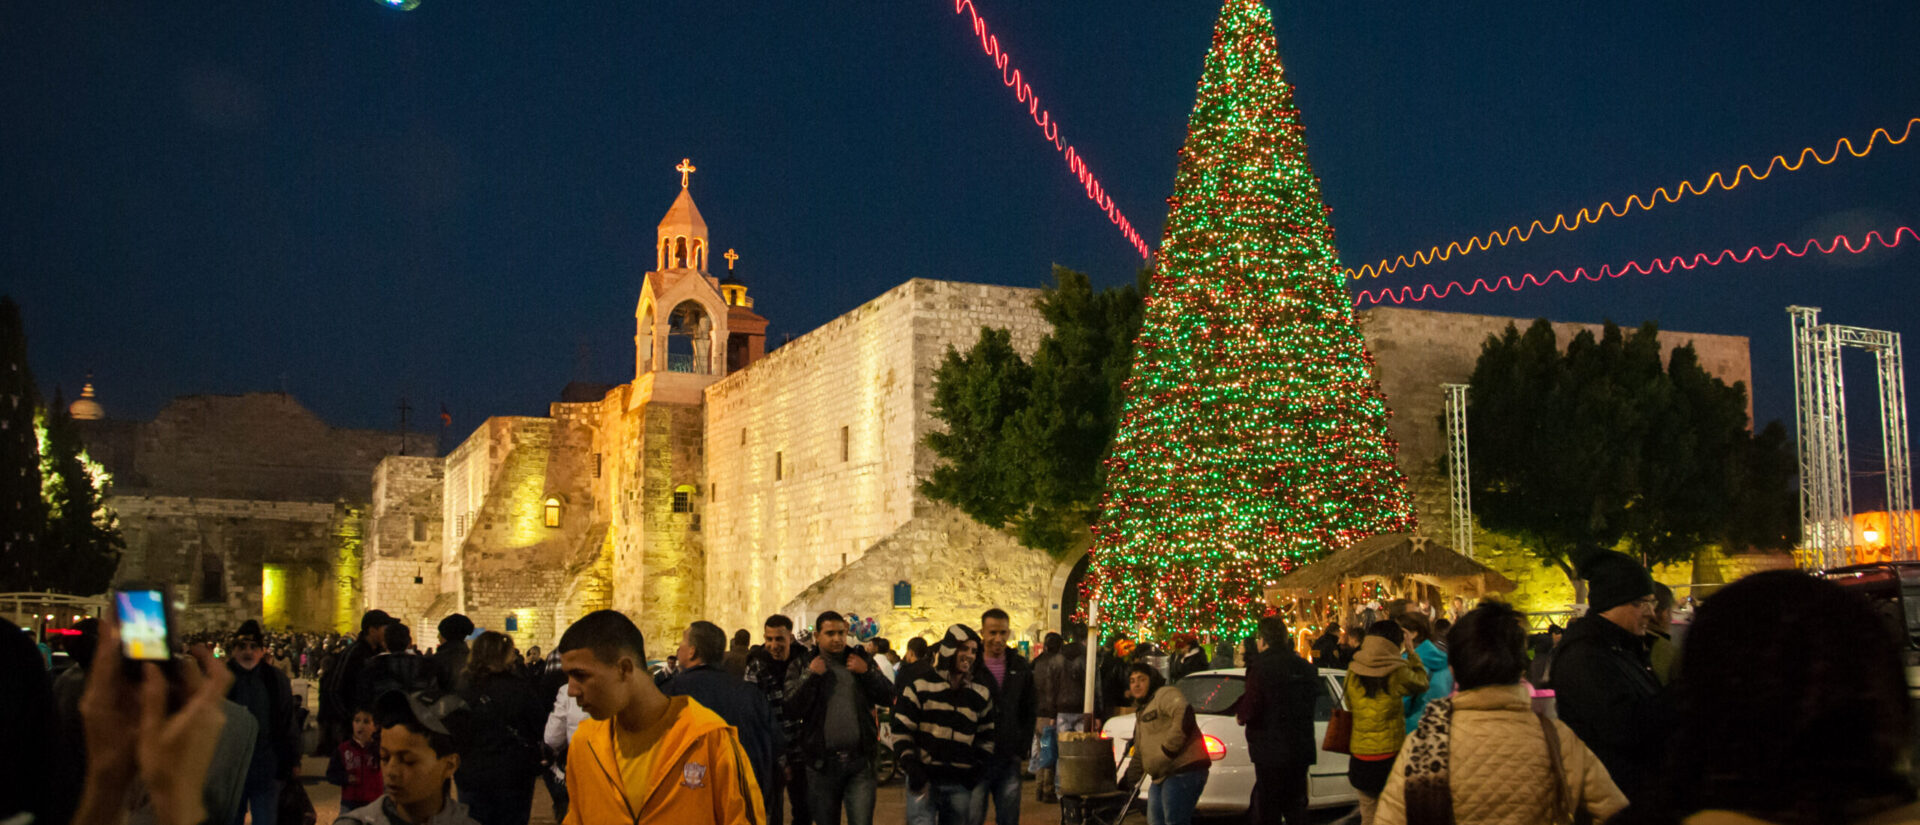 Noël est une fête très importante à Bethléem | (ici en 2012) © Ben & Gab/Flickr/CC BY 2.0